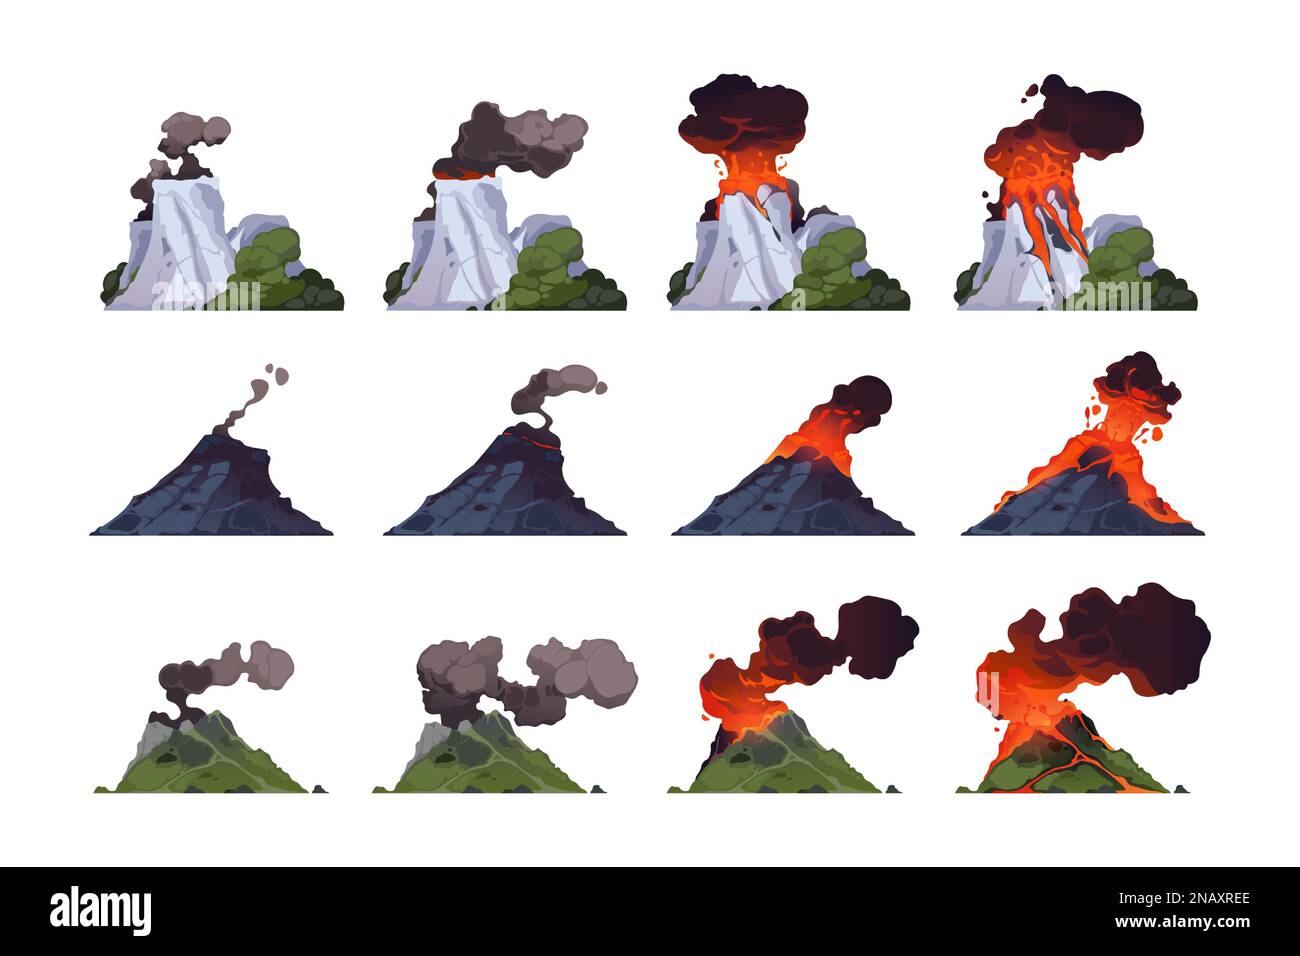 Vulkanausbruch. Cartoon vulkanischer Berg mit verschiedenen Explosionsstadien, Strömungsmagma, Feuer und Rauch, Krater mit Lava, Asche und Gasen. Vektor Stock Vektor